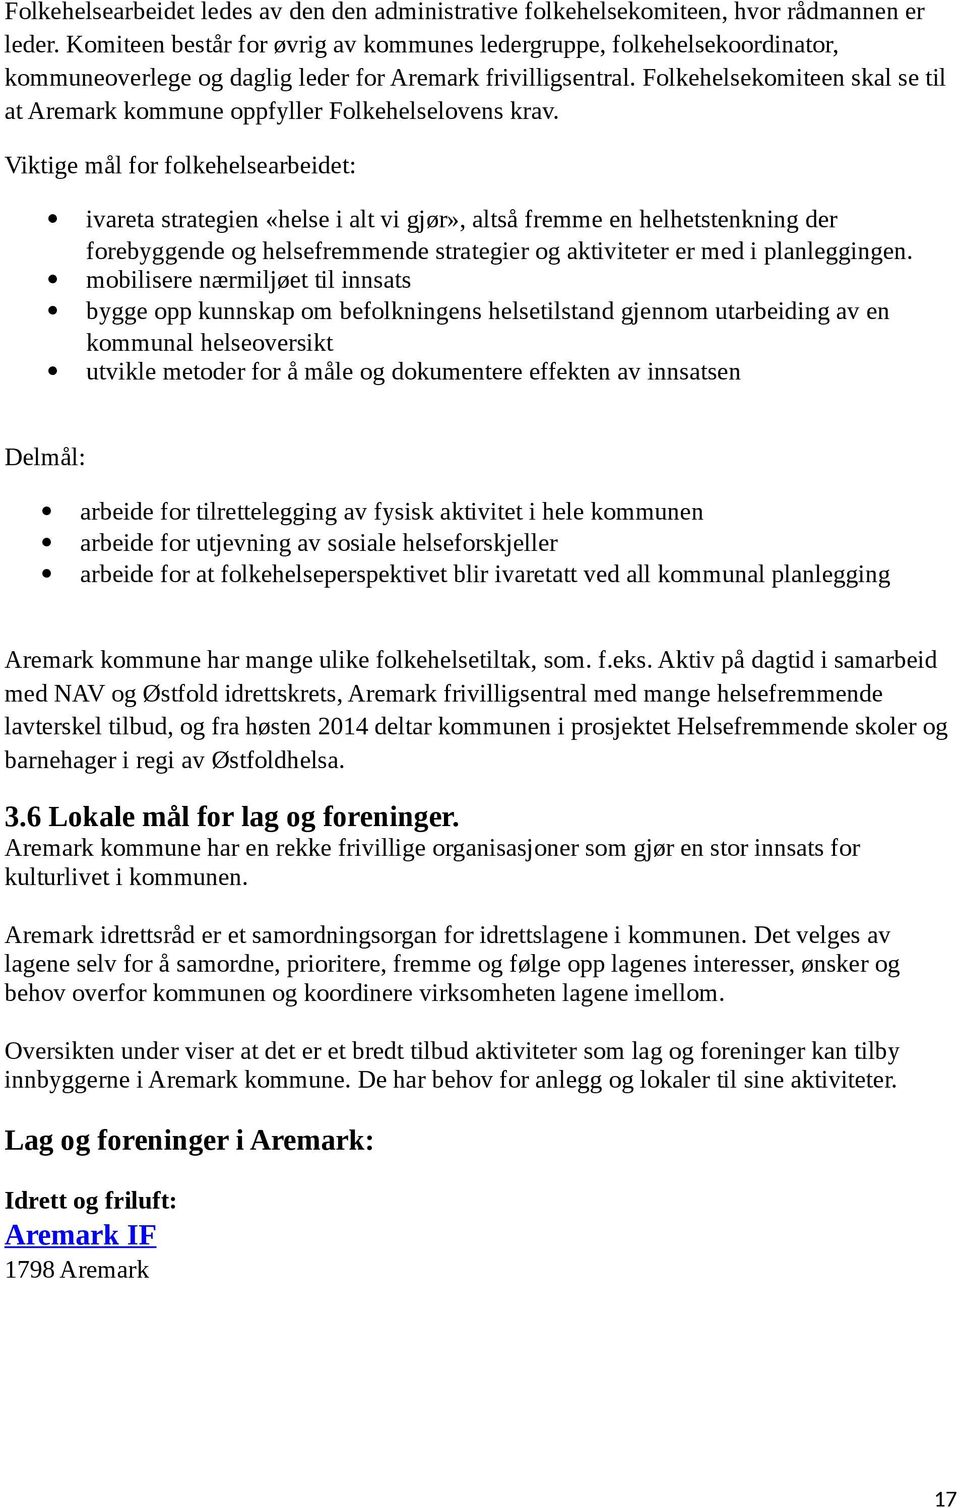 Folkehelsekomiteen skal se til at Aremark kommune oppfyller Folkehelselovens krav.